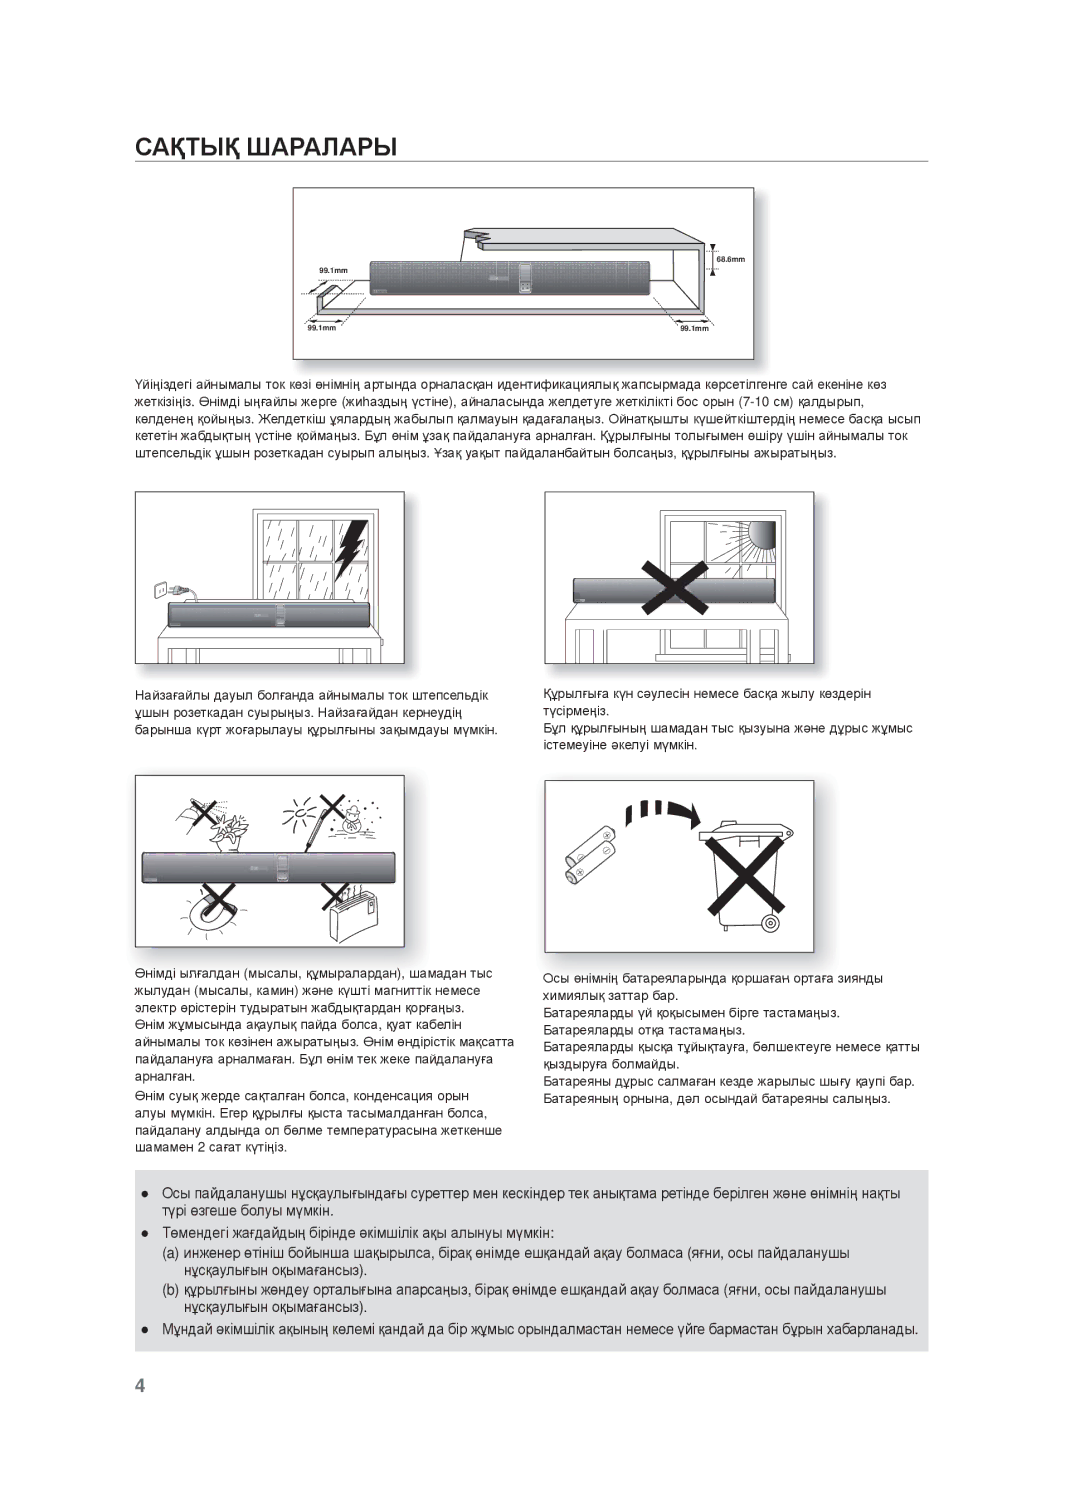 Samsung HW-F750/RU manual ɊȺҚɌЫҚ Шⱥɋⱥлⱥɋы 